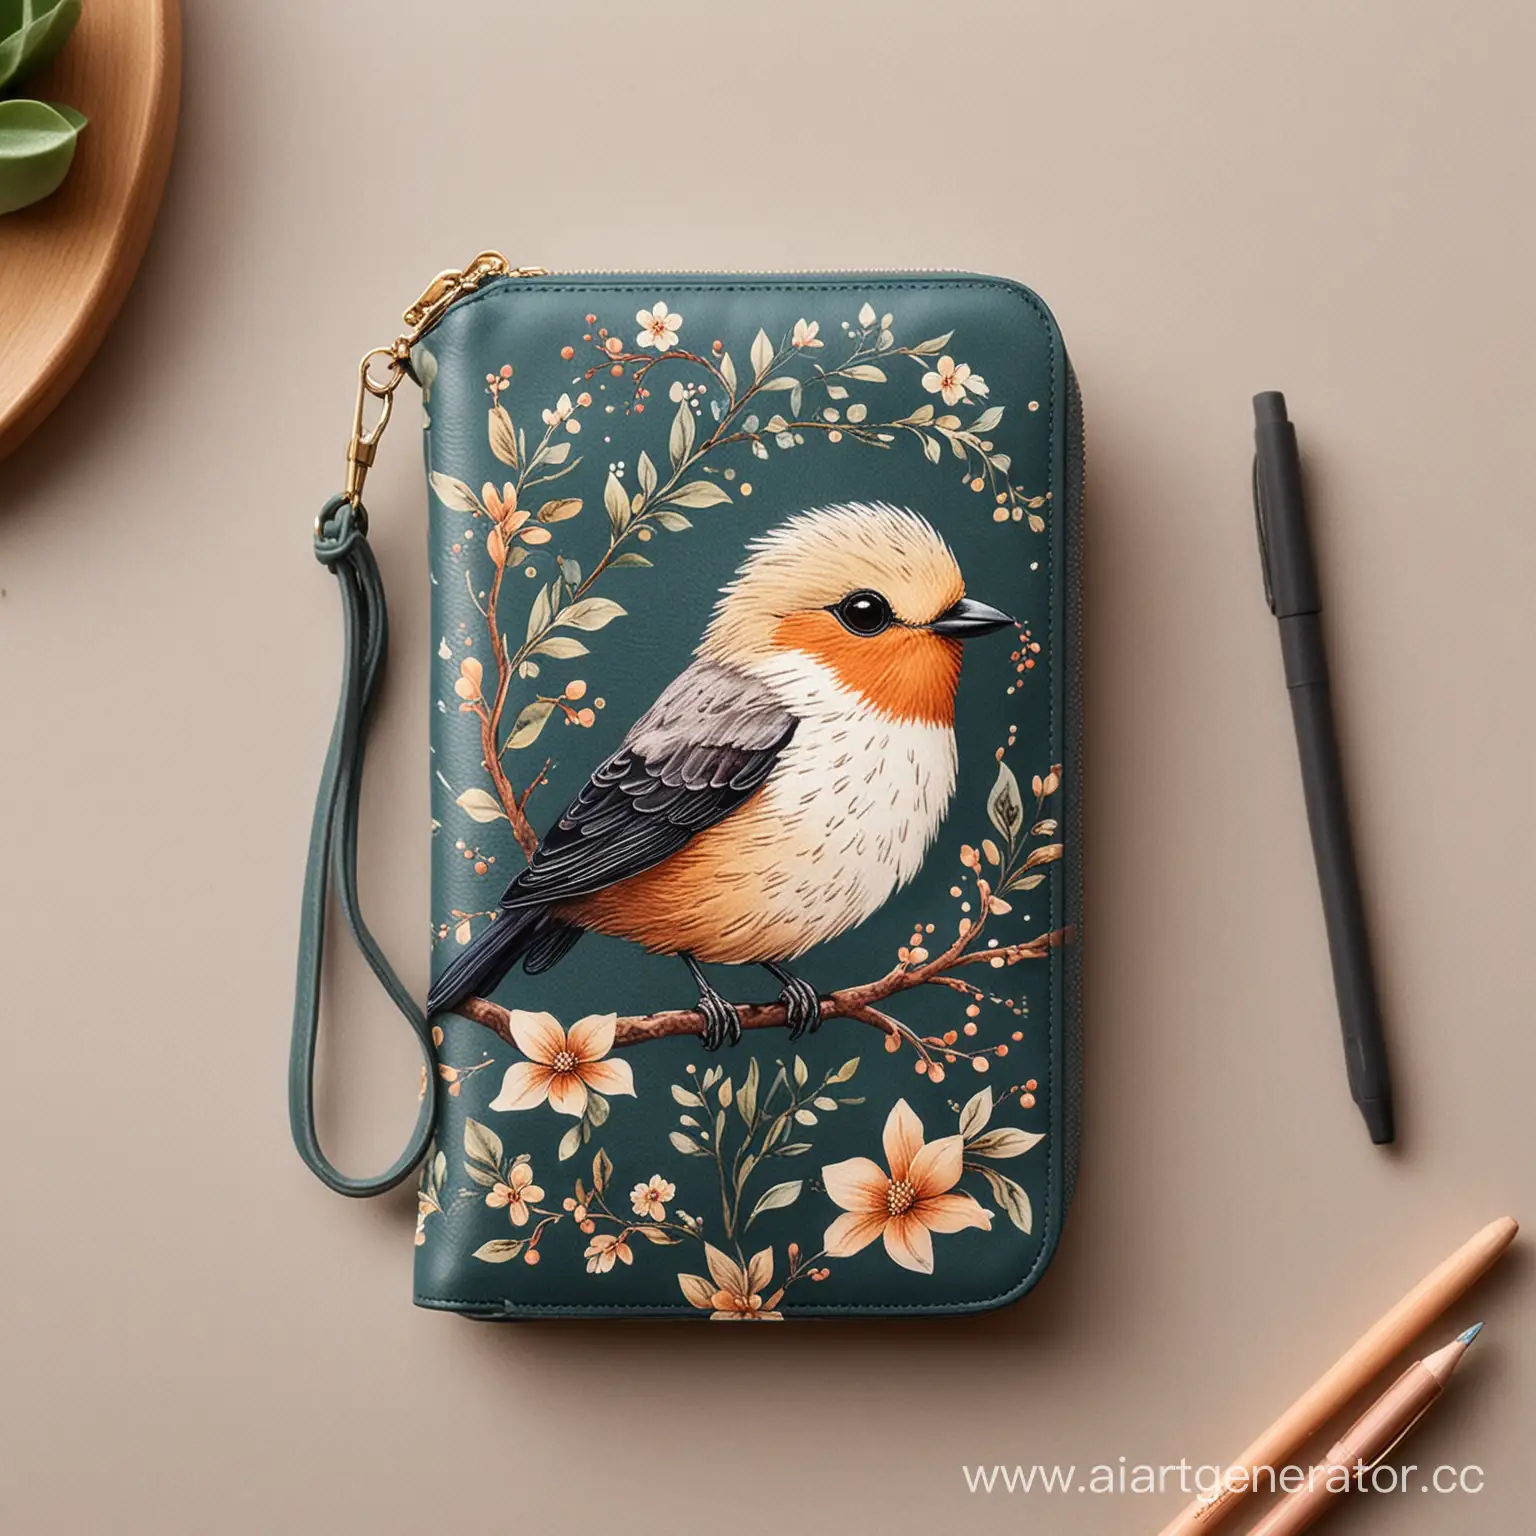 Нарисуй милый арт на женской сумочке для телефона в стиле птиц. Сумочка лежит на столе